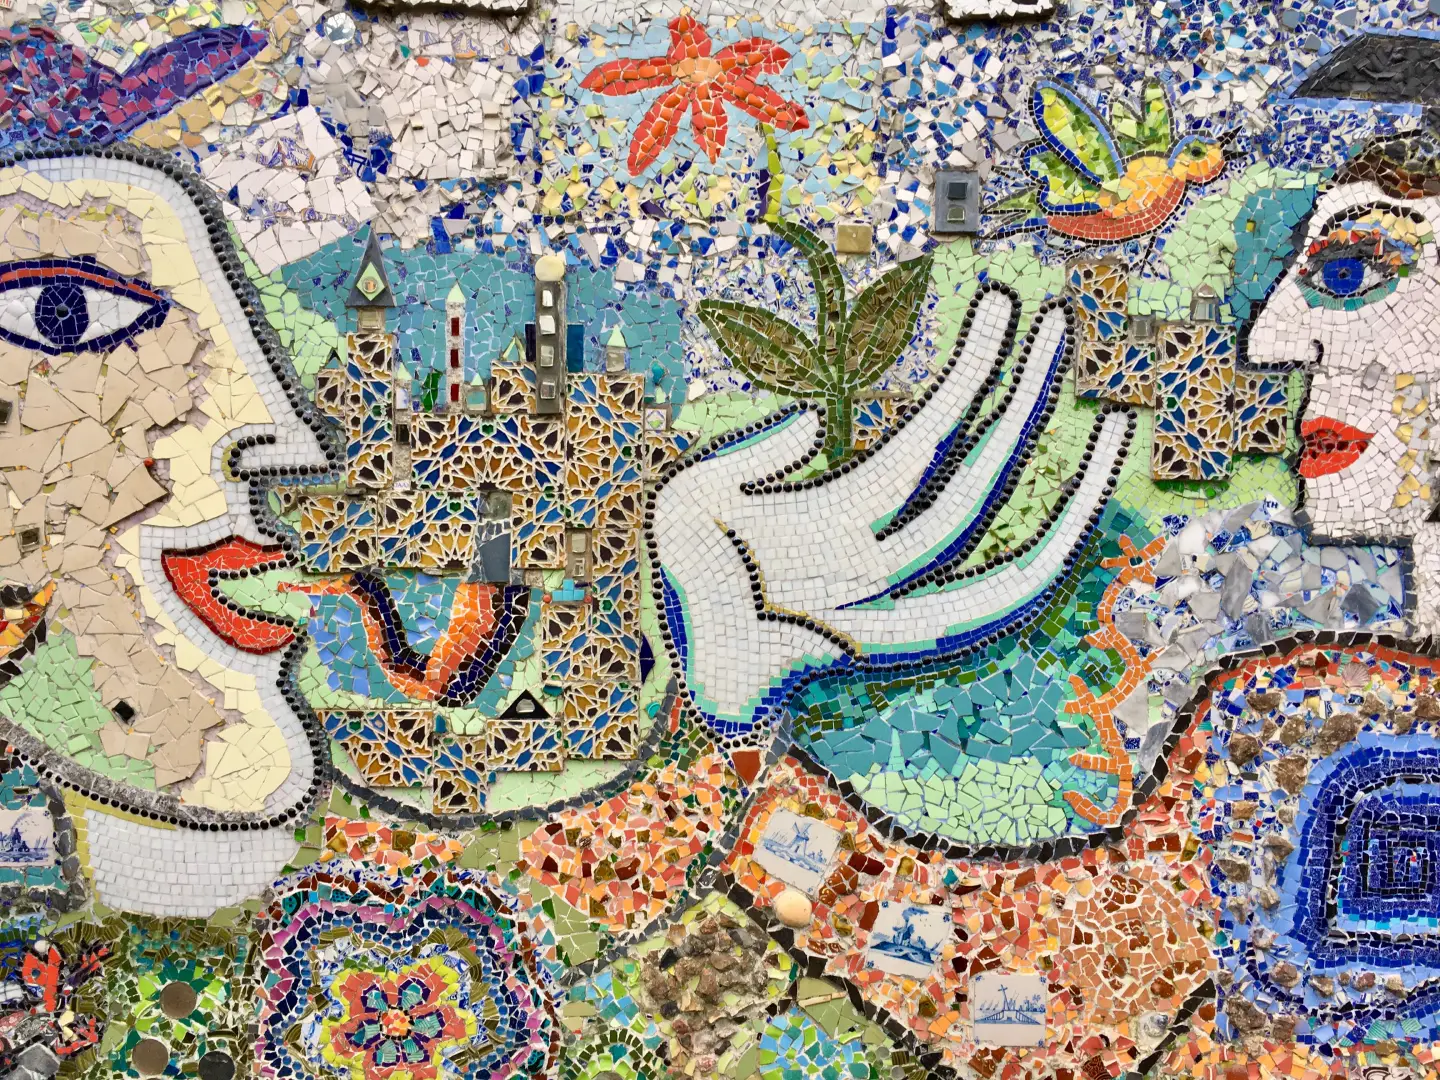 mossaic-art